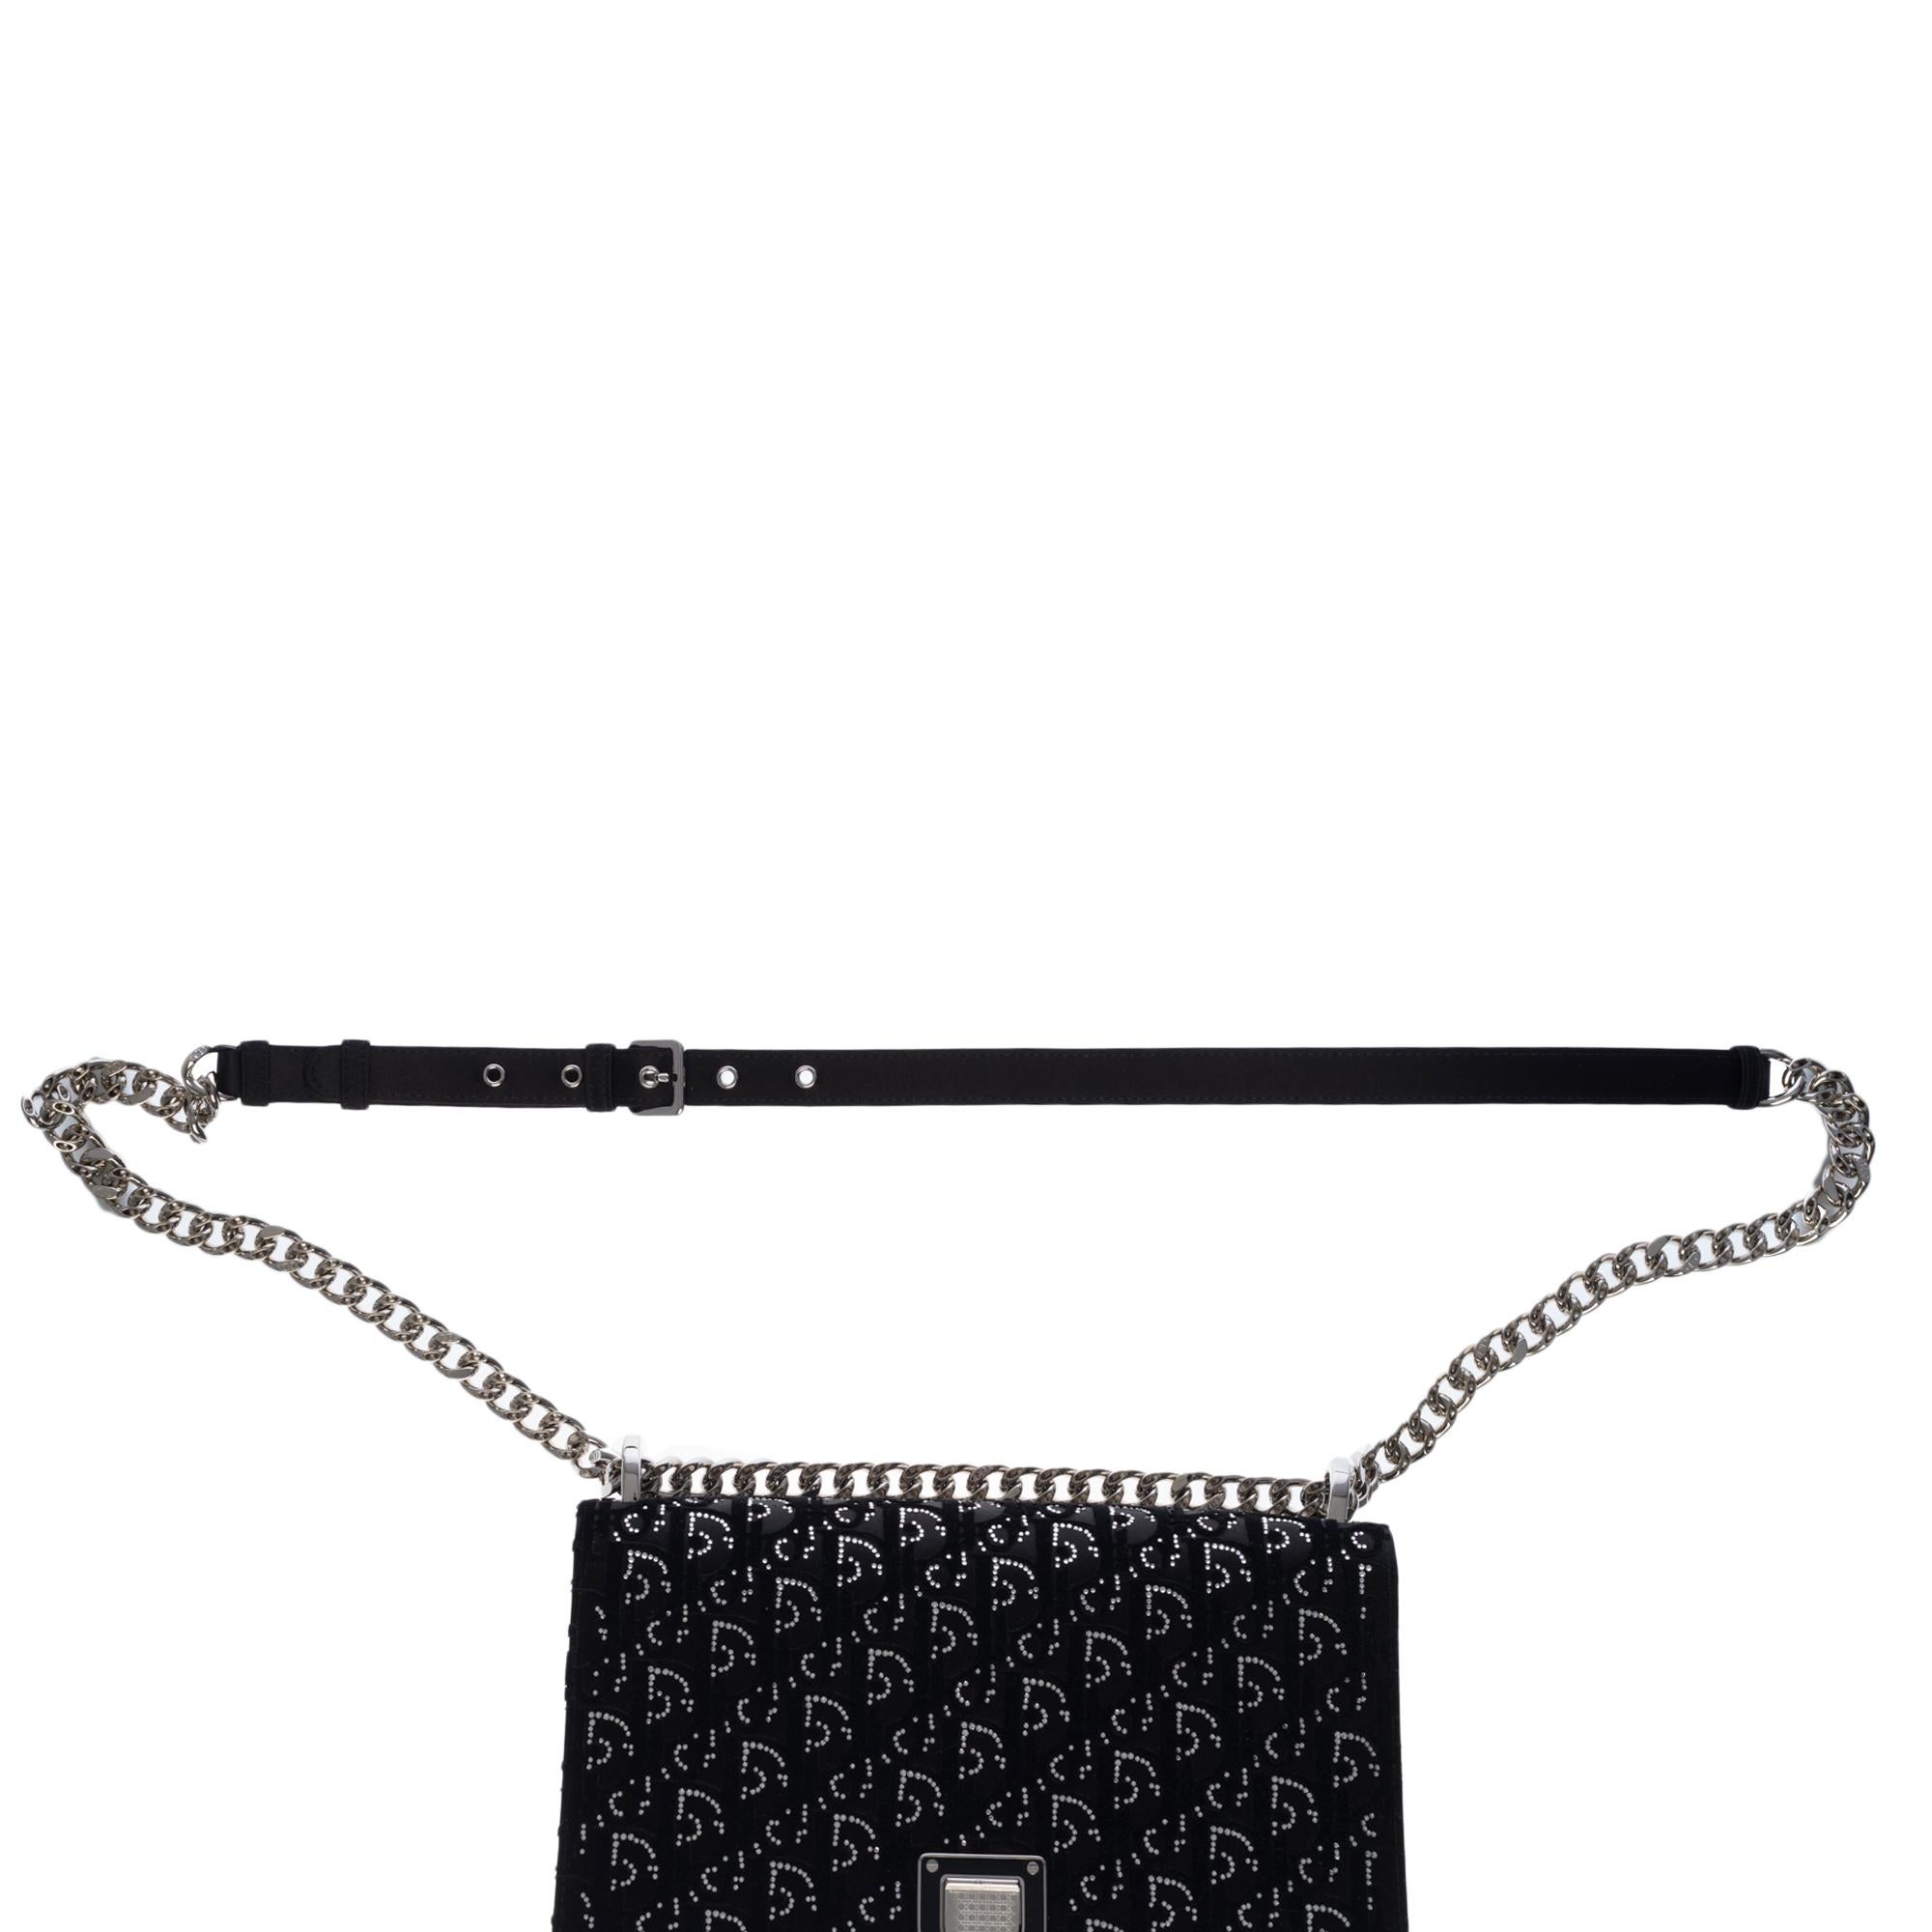 Christian Dior Diorama Shoulder bag in black velvet and crystals, SHW 2